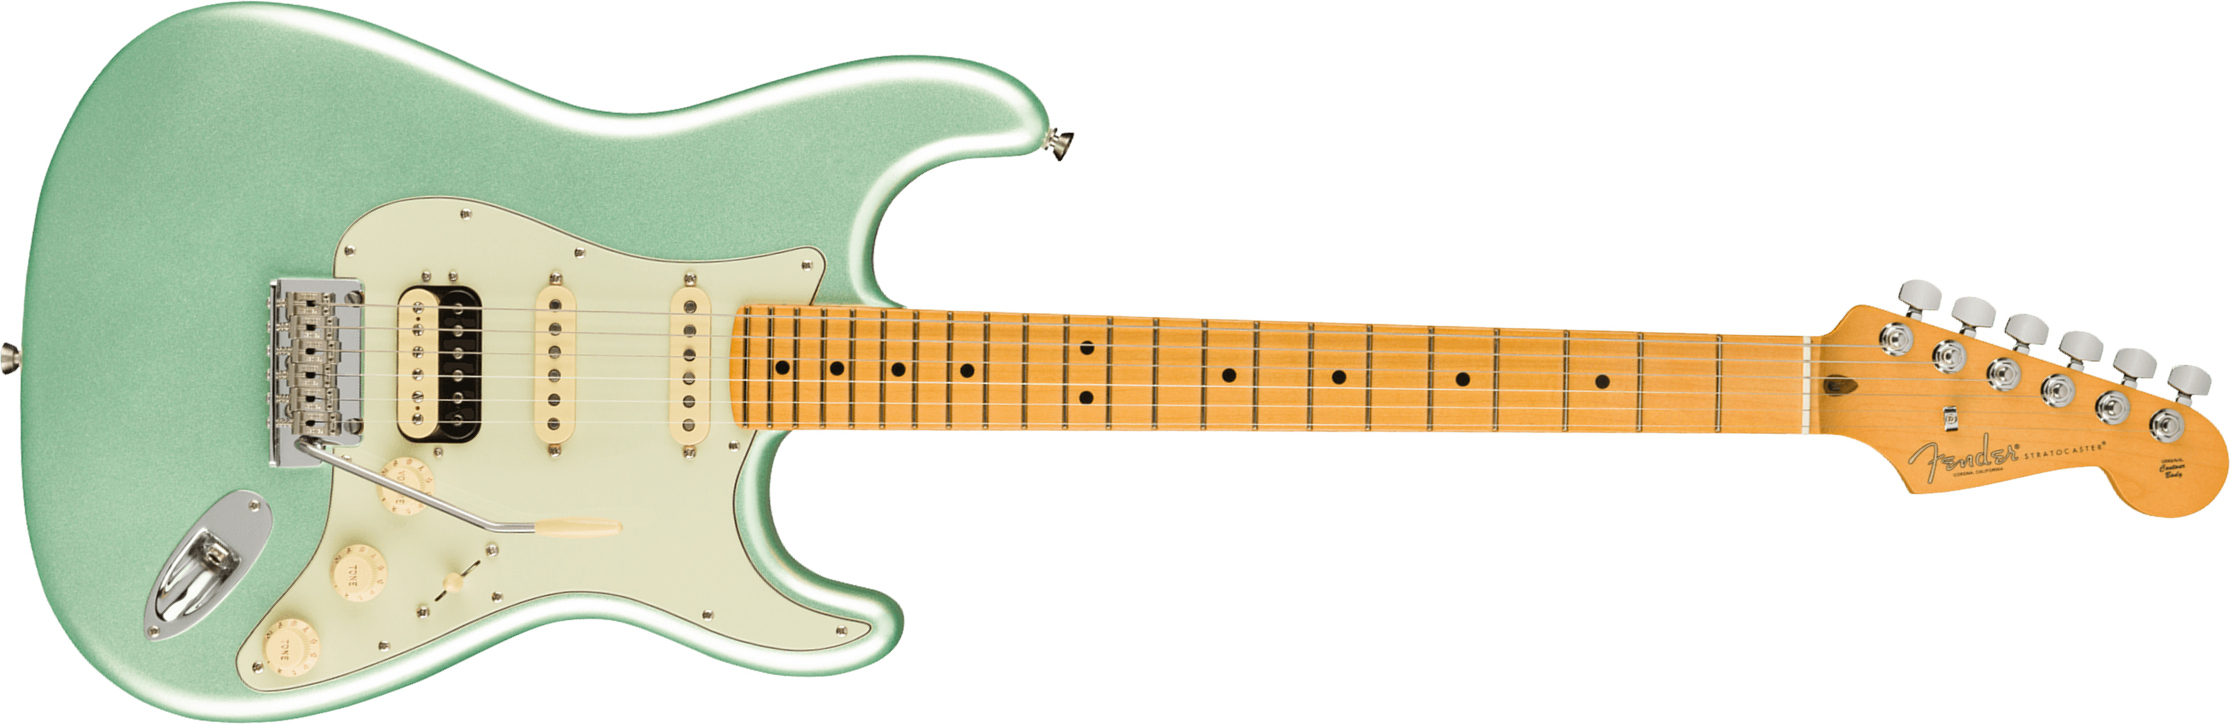 Fender Strat American Professional Ii Hss Usa Mn - Mystic Surf Green - Elektrische gitaar in Str-vorm - Main picture